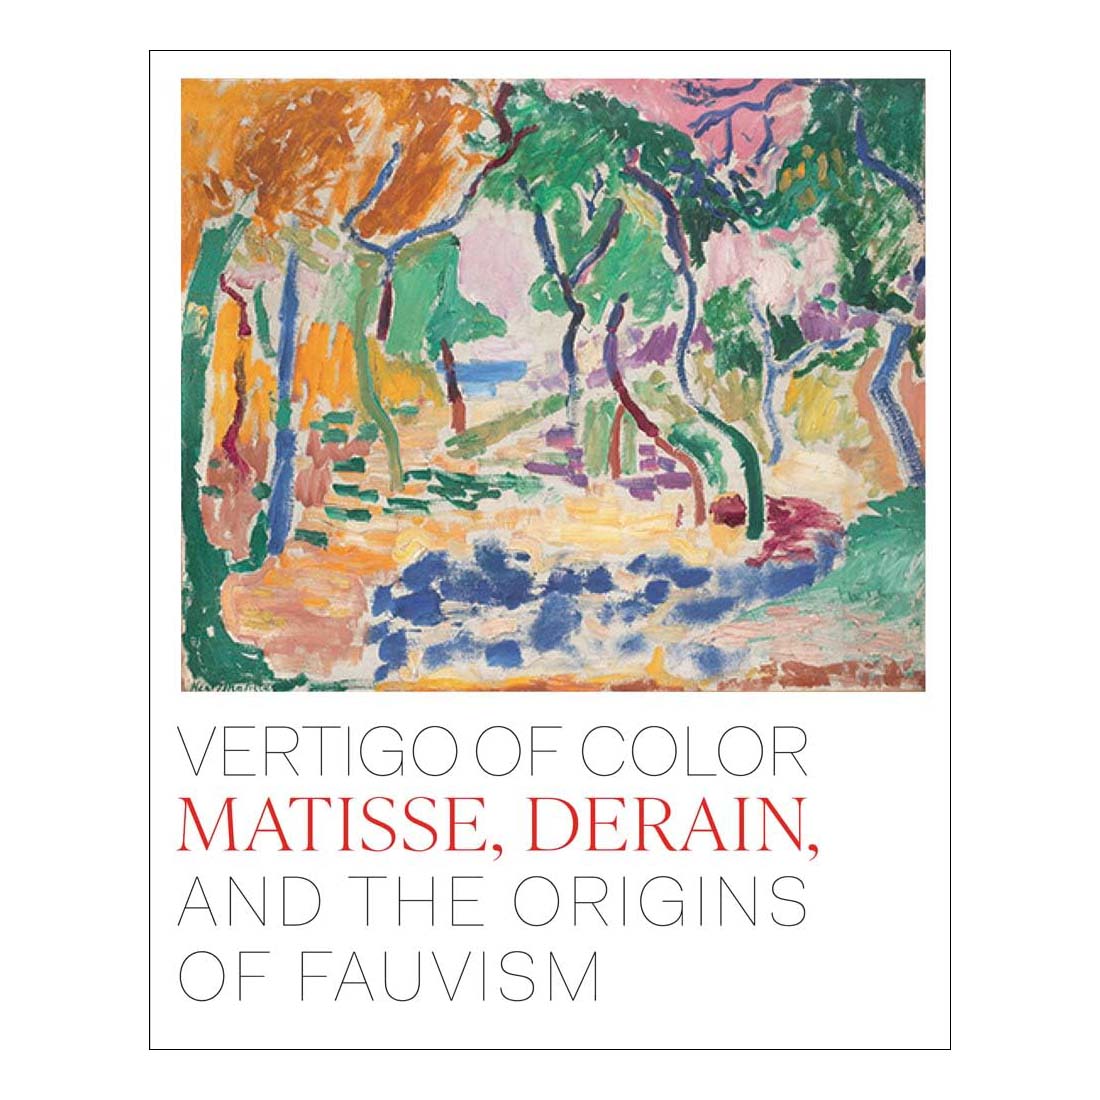 Vertigo of Color: Matisse, Derain and the Origins of Fauvism